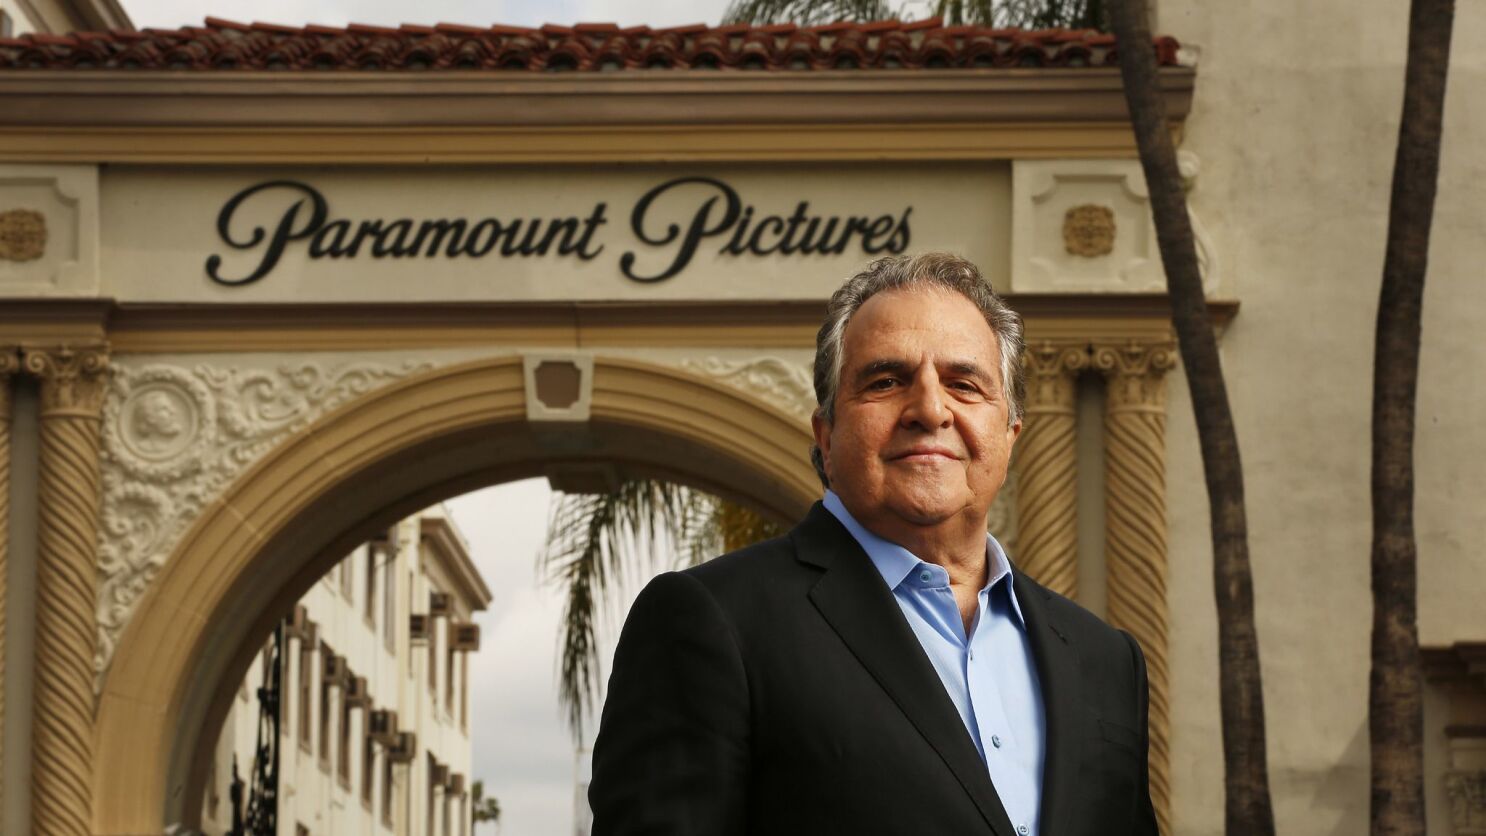 Paramount Pictures success